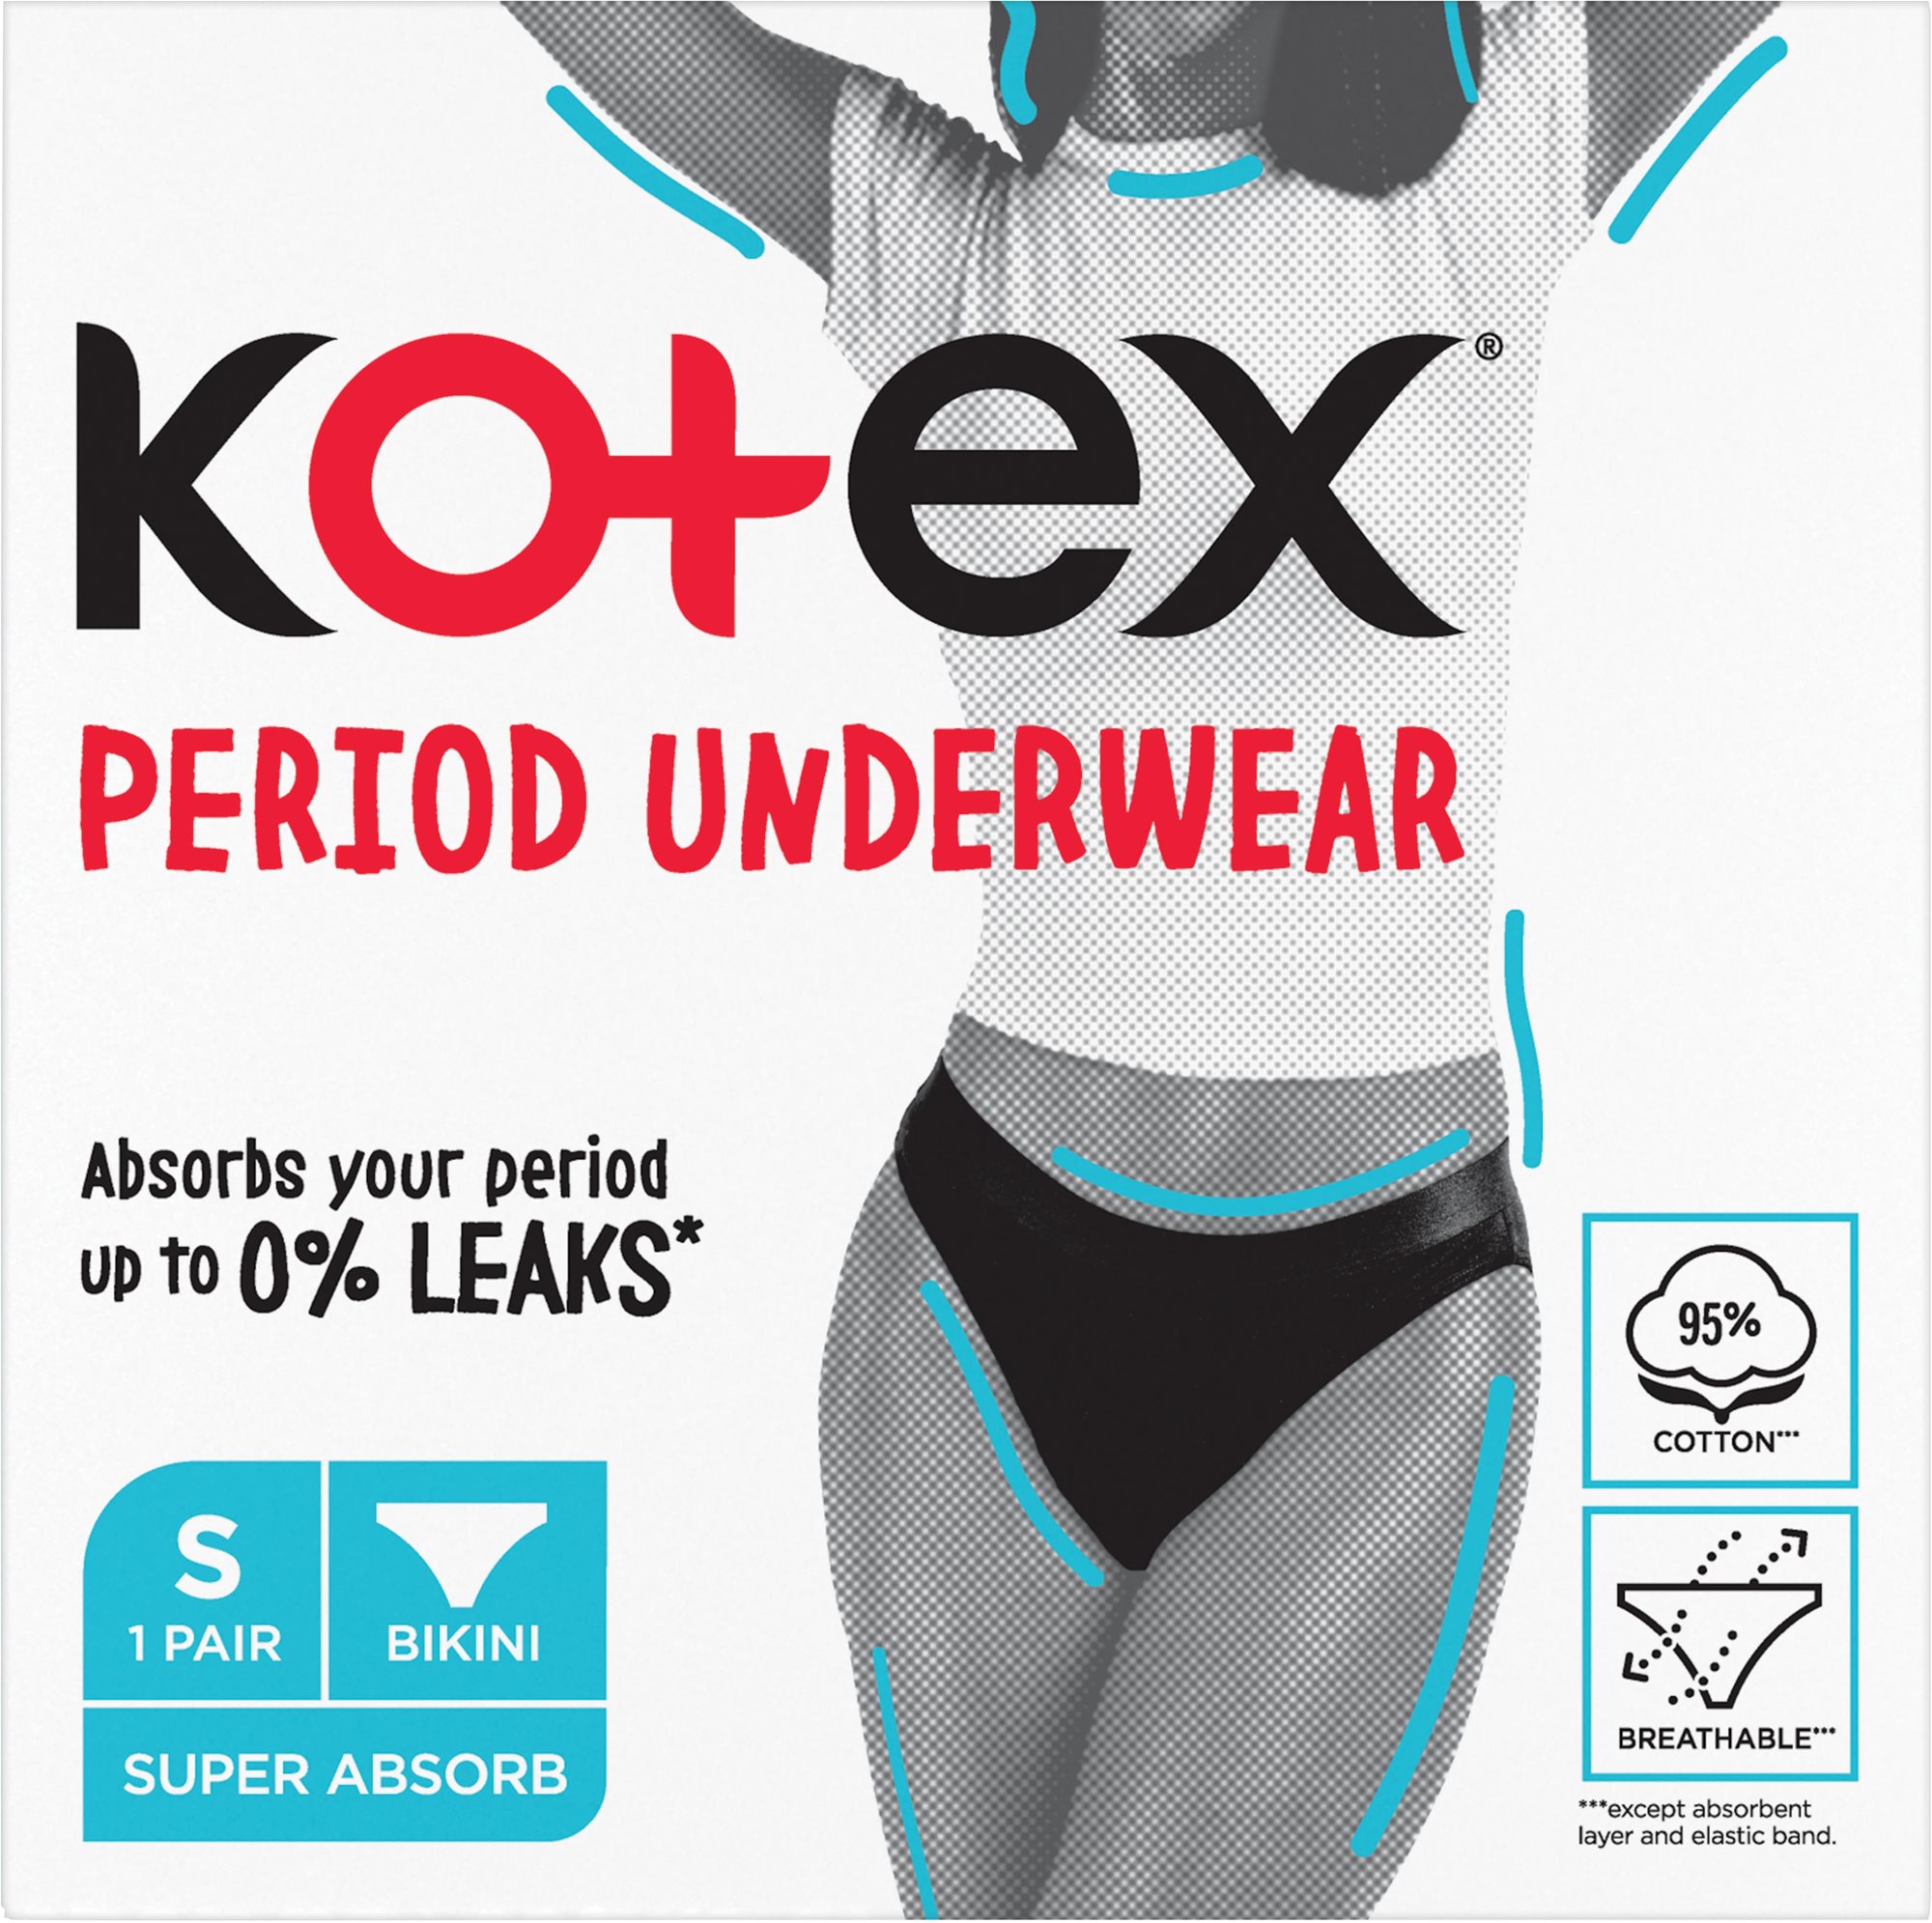 KOTEX Period Underwear